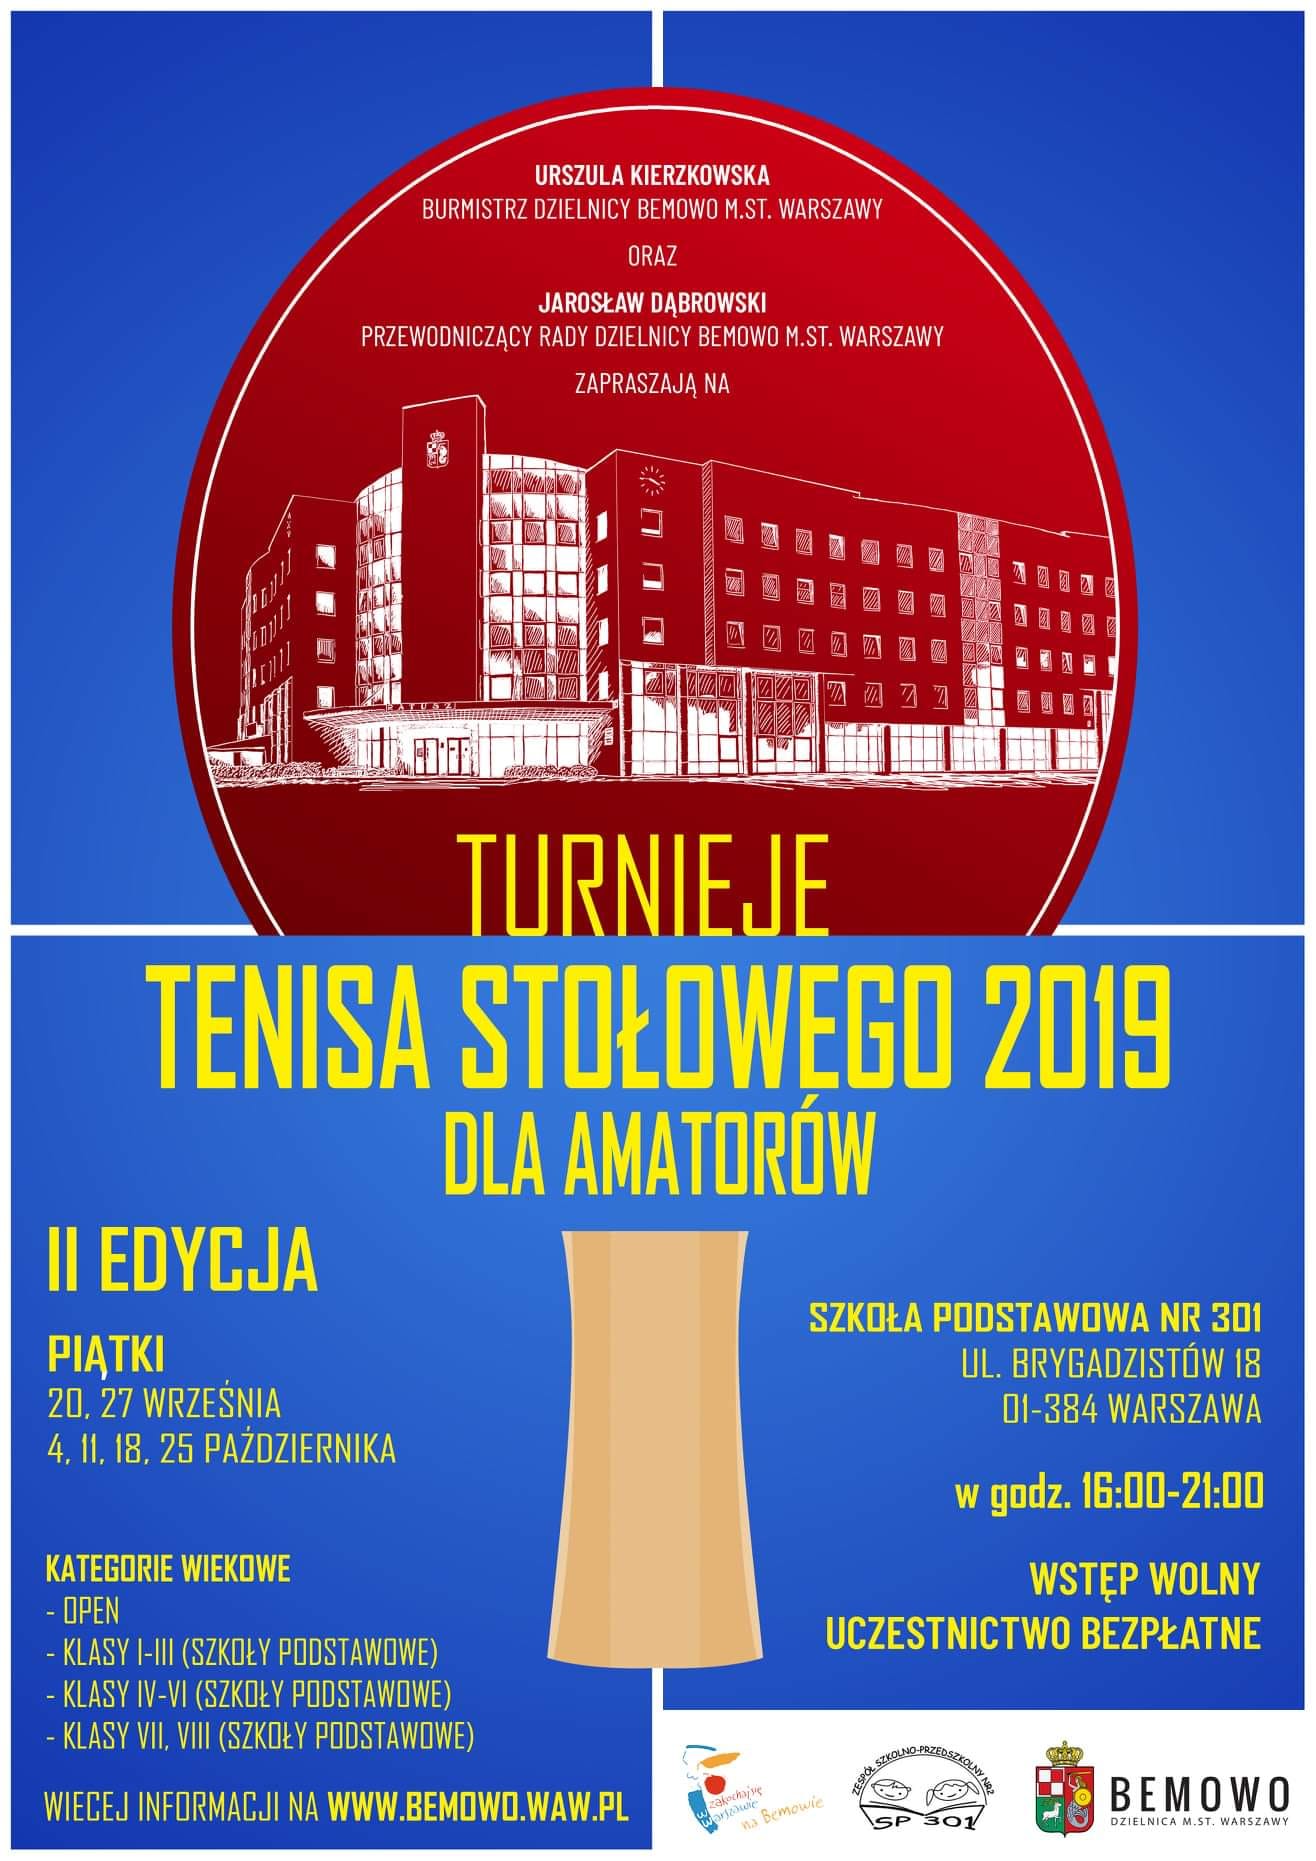 Plakat turnieju Turnieje tenisa stołowego Bemowo - Brygadzistów (27 września 2019) - II EDYCJA